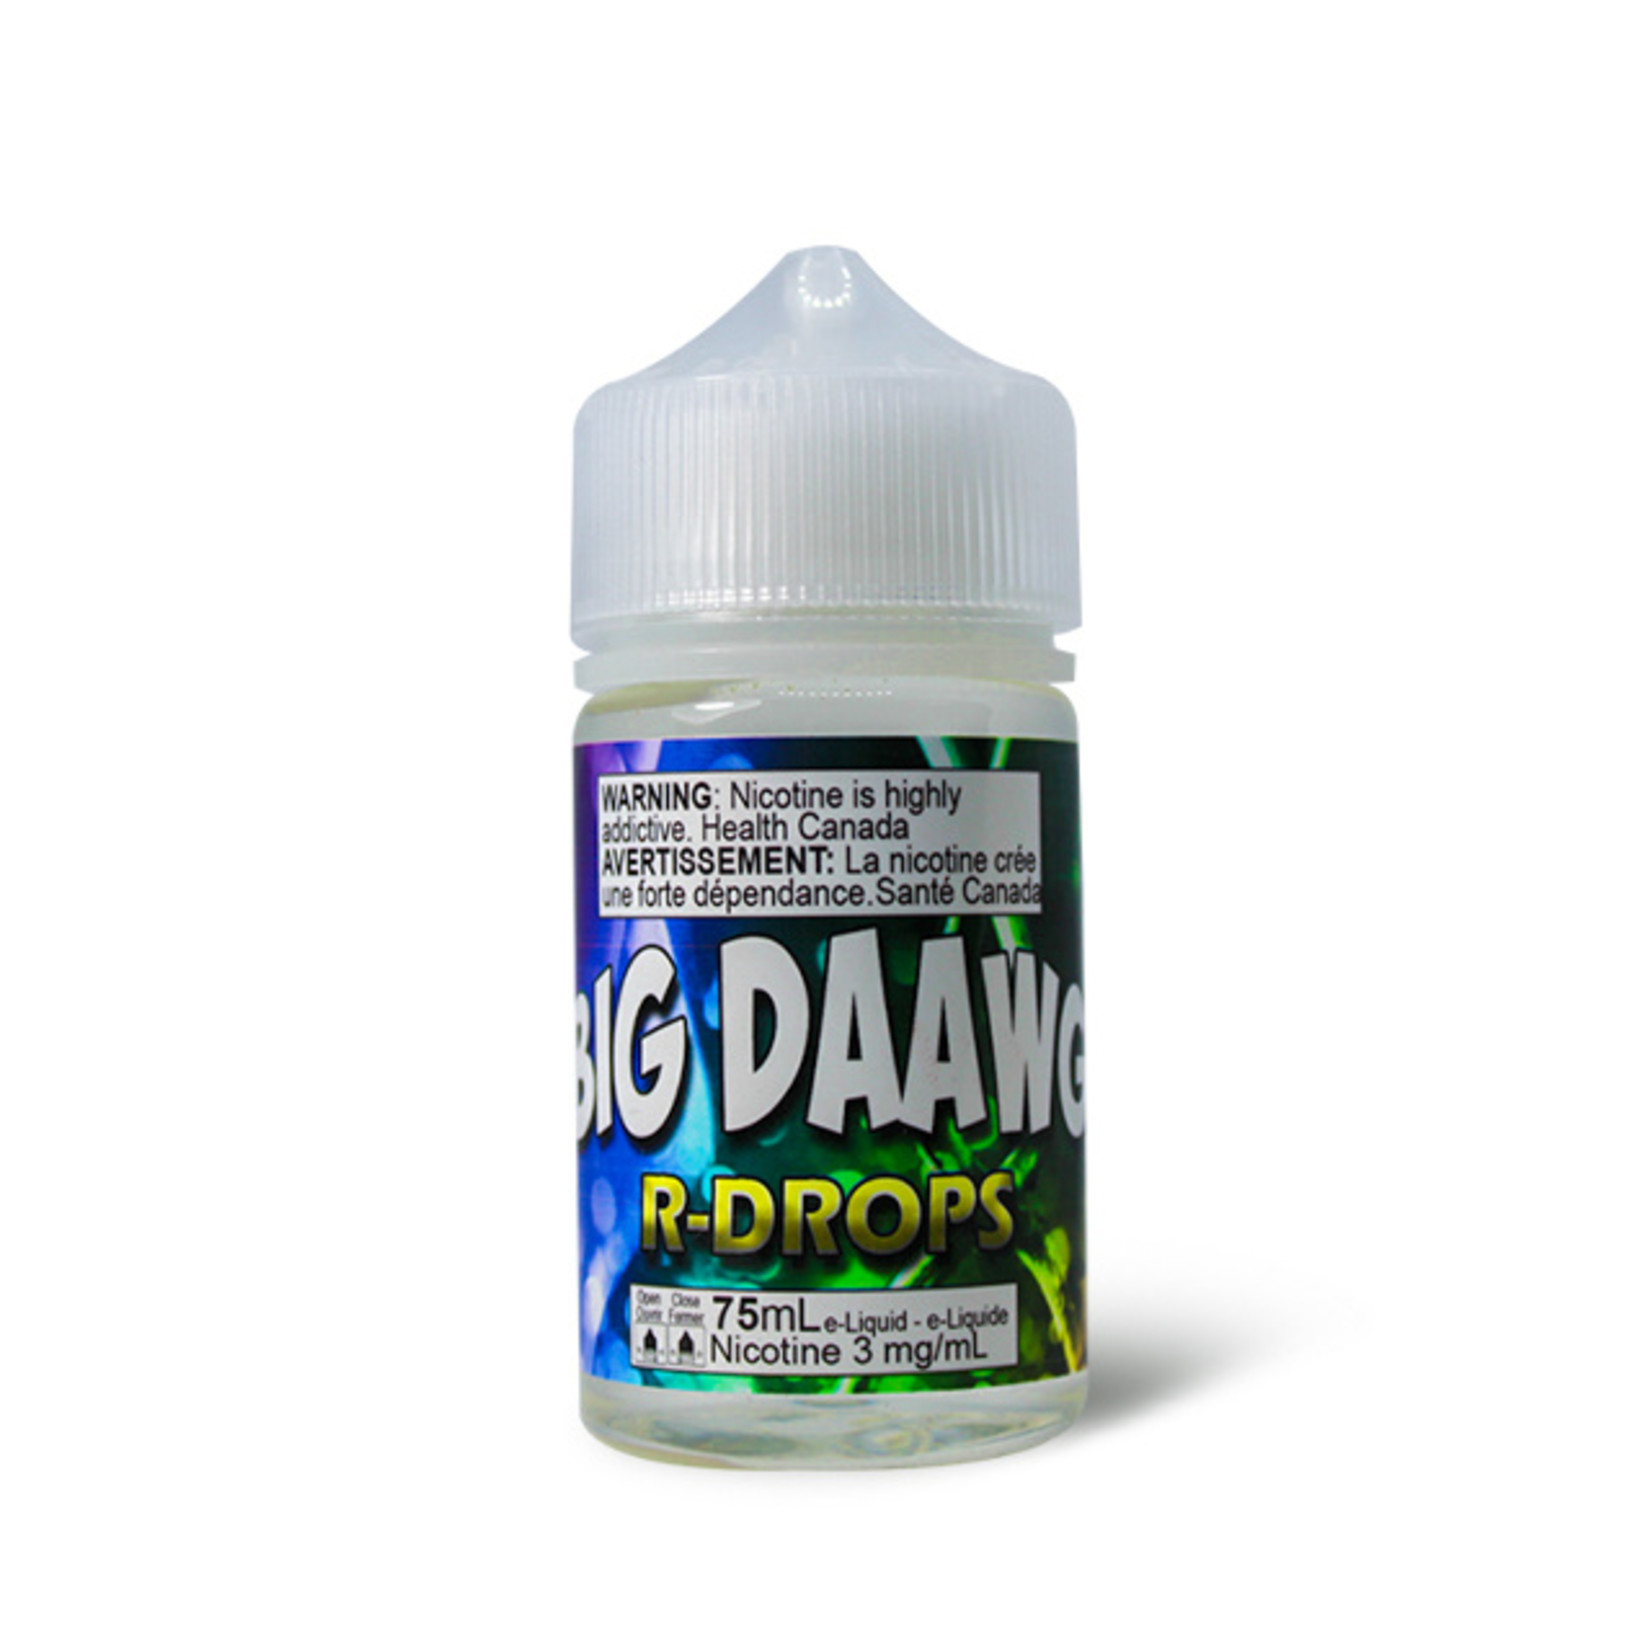 TDaawg - Big Daawg R-Drops